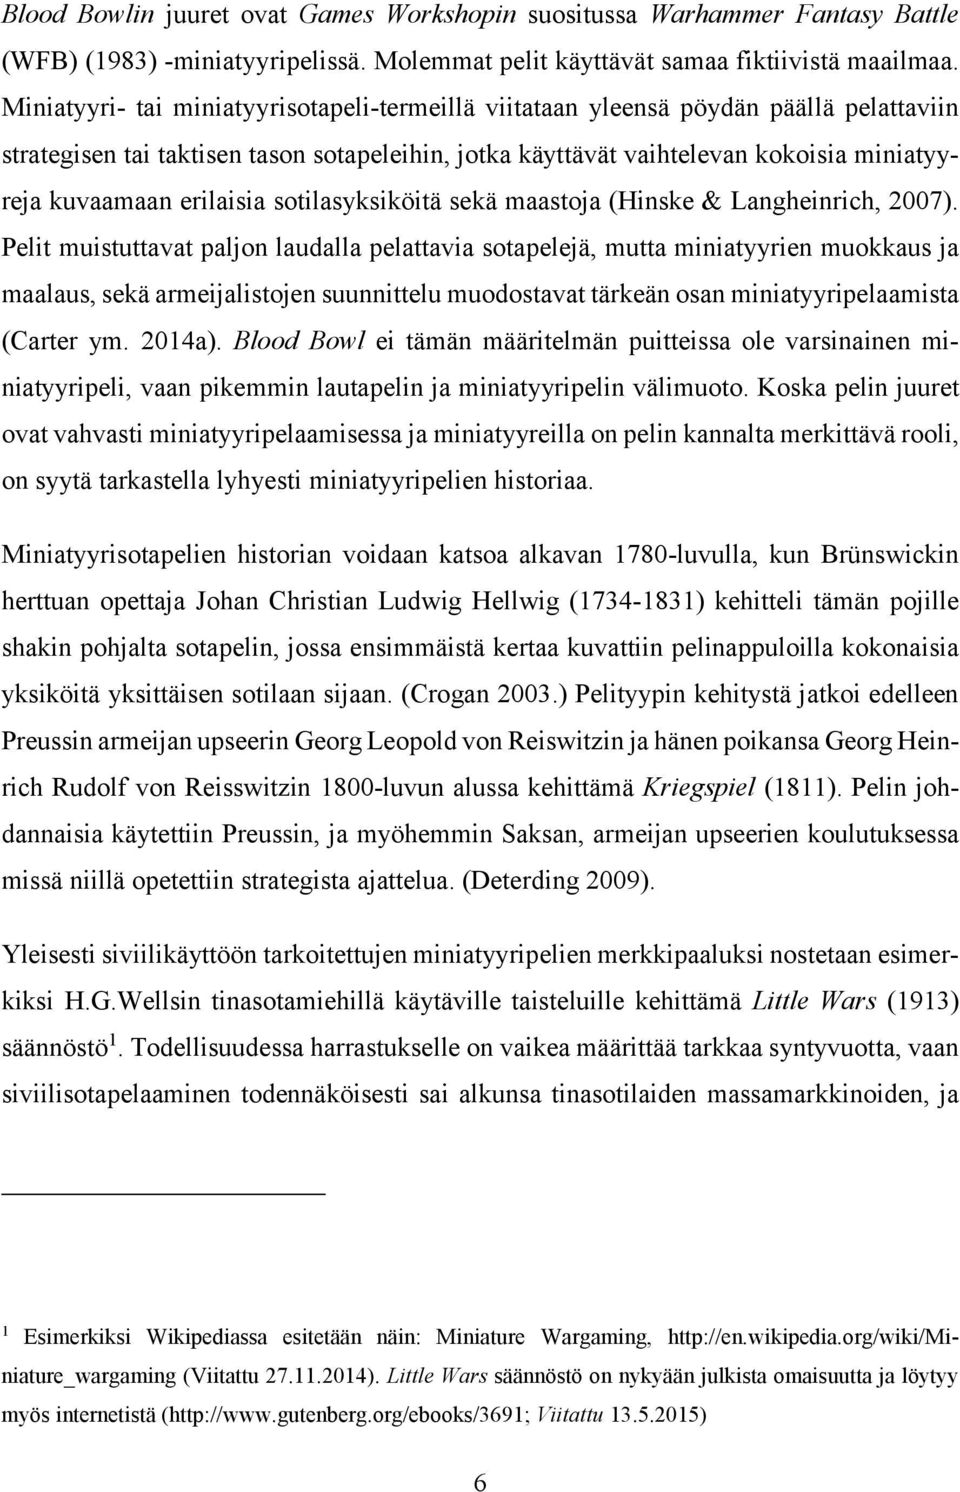 erilaisia sotilasyksiköitä sekä maastoja (Hinske & Langheinrich, 2007).